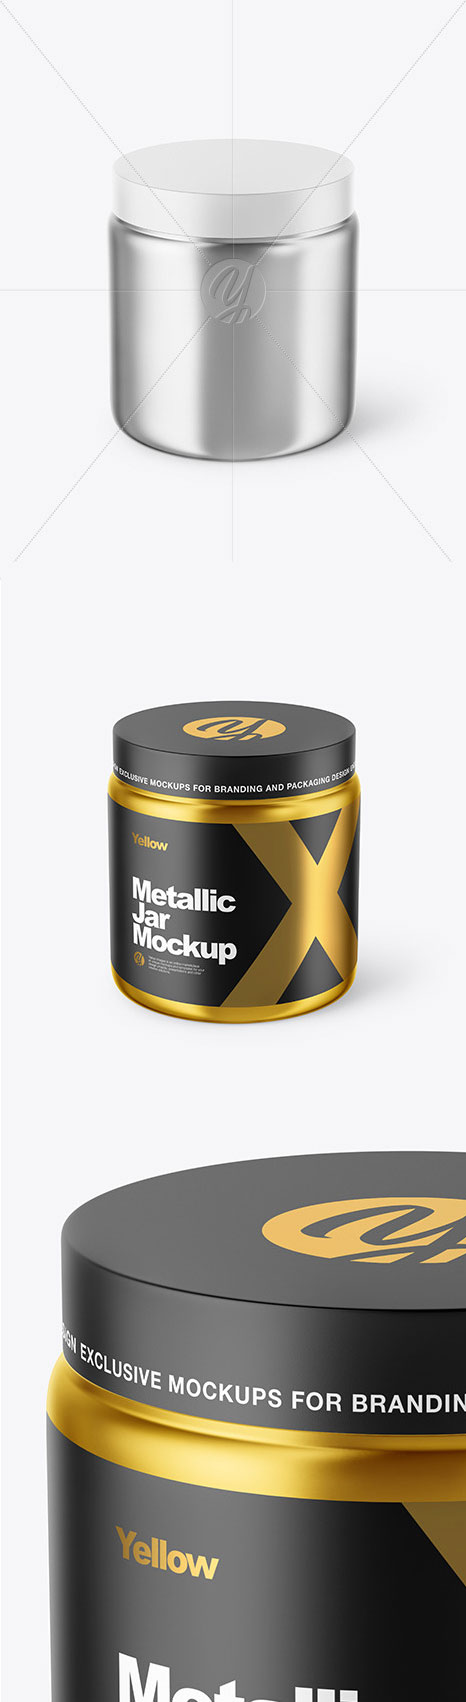 Metallized Plastic Jar Mockup 46262